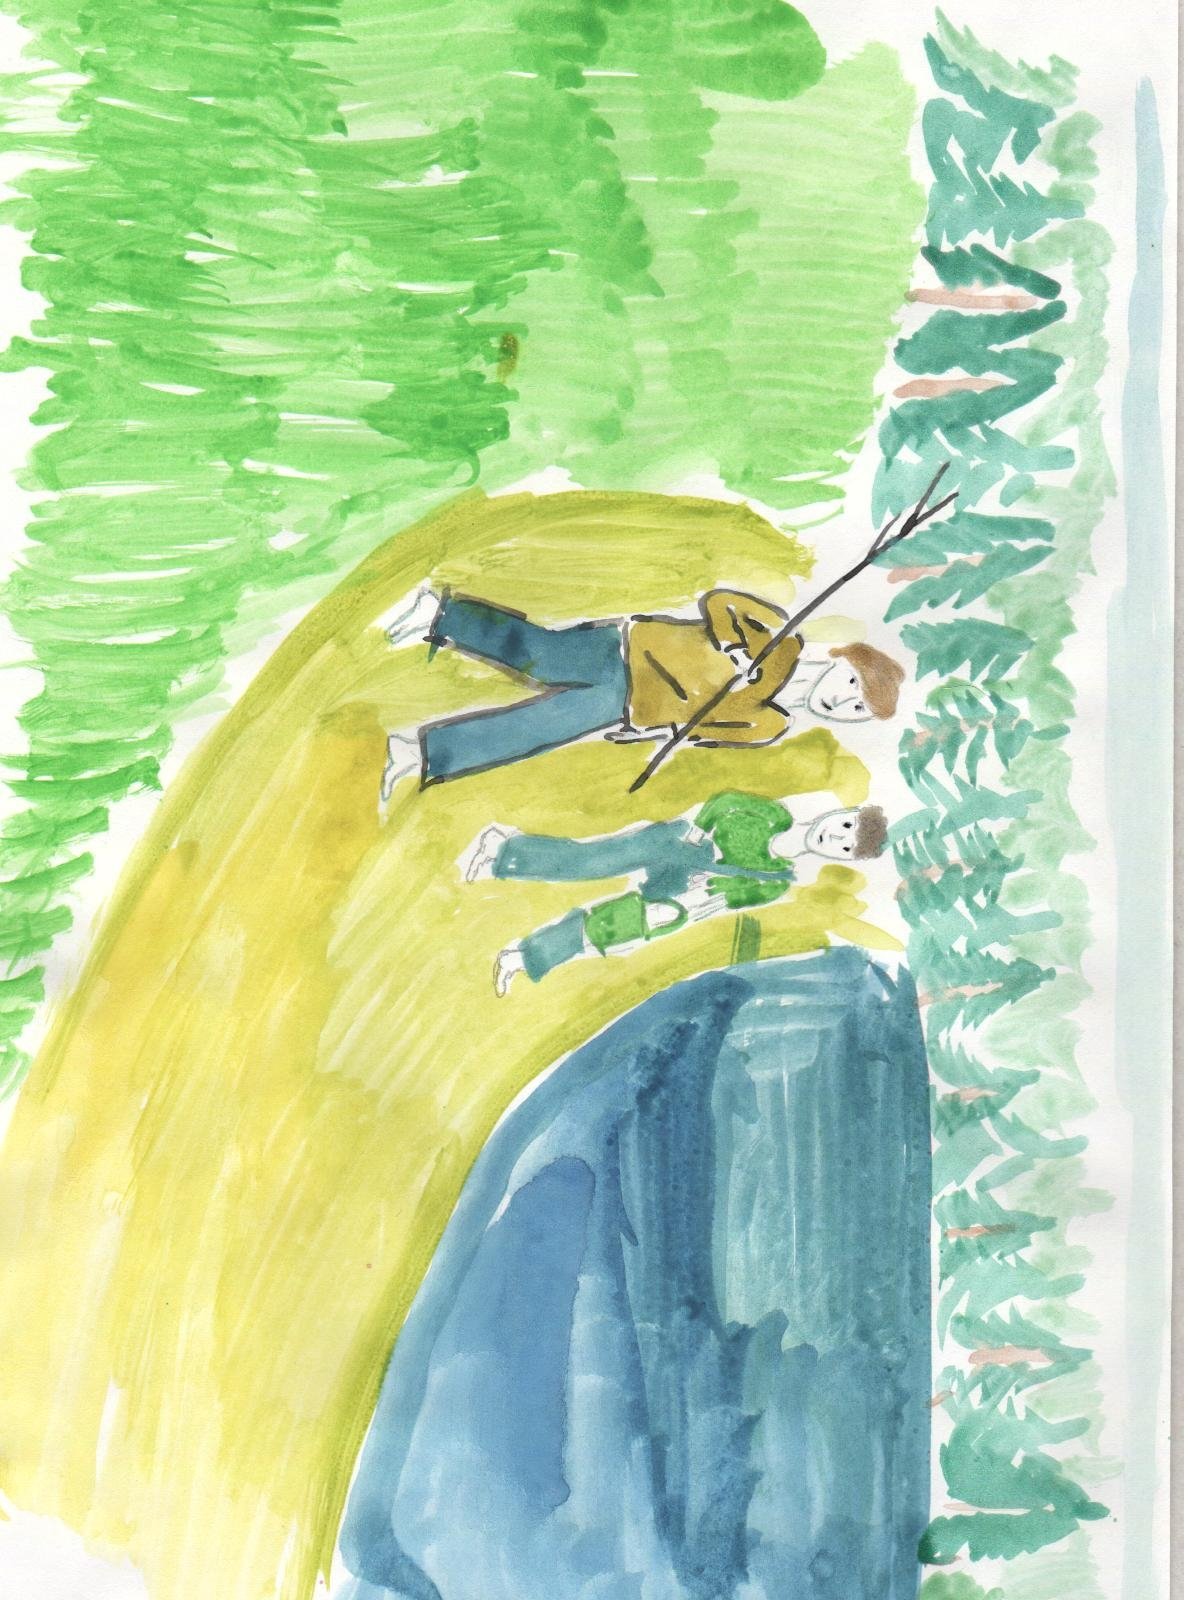 Иллюстрация к рассказу васюткино озеро карандашом. Иллюстрация к рассказу Васюткино озеро. Иллюстрация Васюткино озеро 5 класс. Иллюстрация к рассказу Васюткино озеро 5 класс карандашом. Иллюстрация к сказке Васюткино озеро 5 класс.